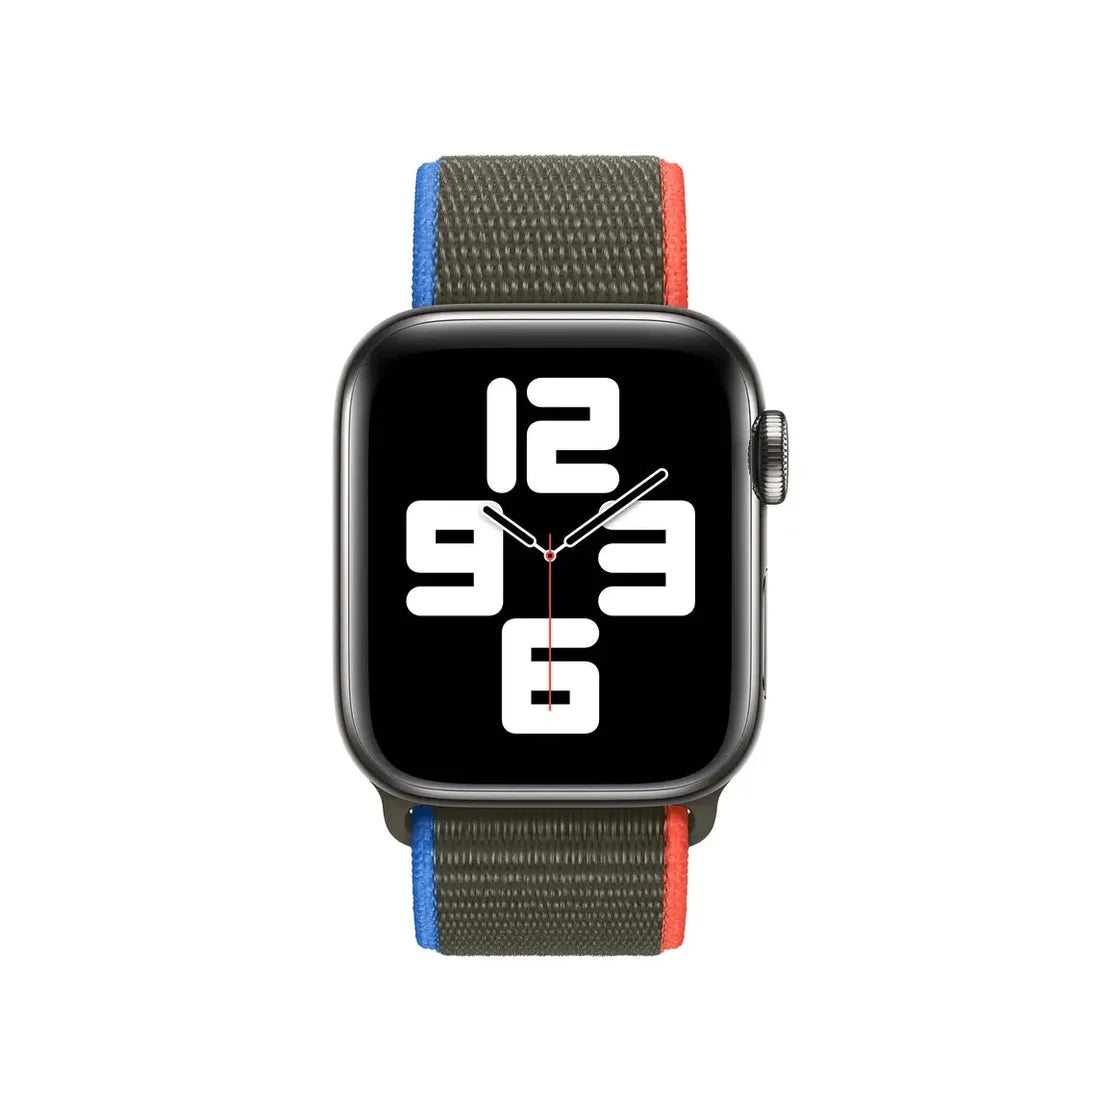 Apple Watch 40mm Olive Sport Loop